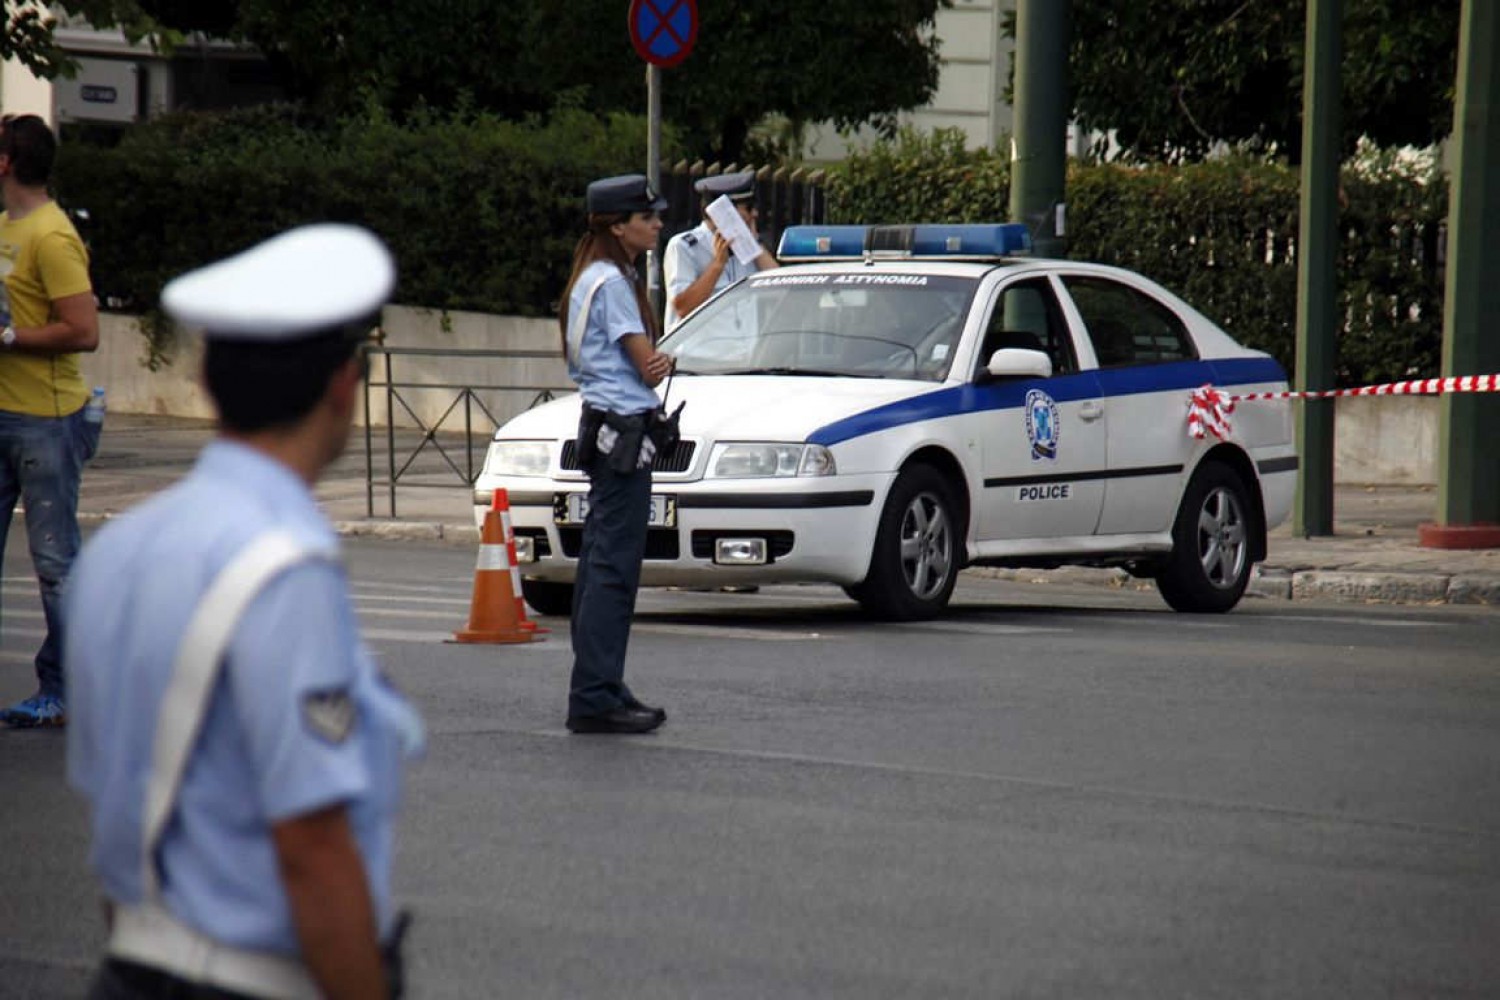 Πτολεμαΐδα: Η Τροχαία «έκοψε» κλήση σε αυτοκίνητο που έπαιζε από μεγάφωνο το «Μακεδονία ξακουστή» (φωτο)